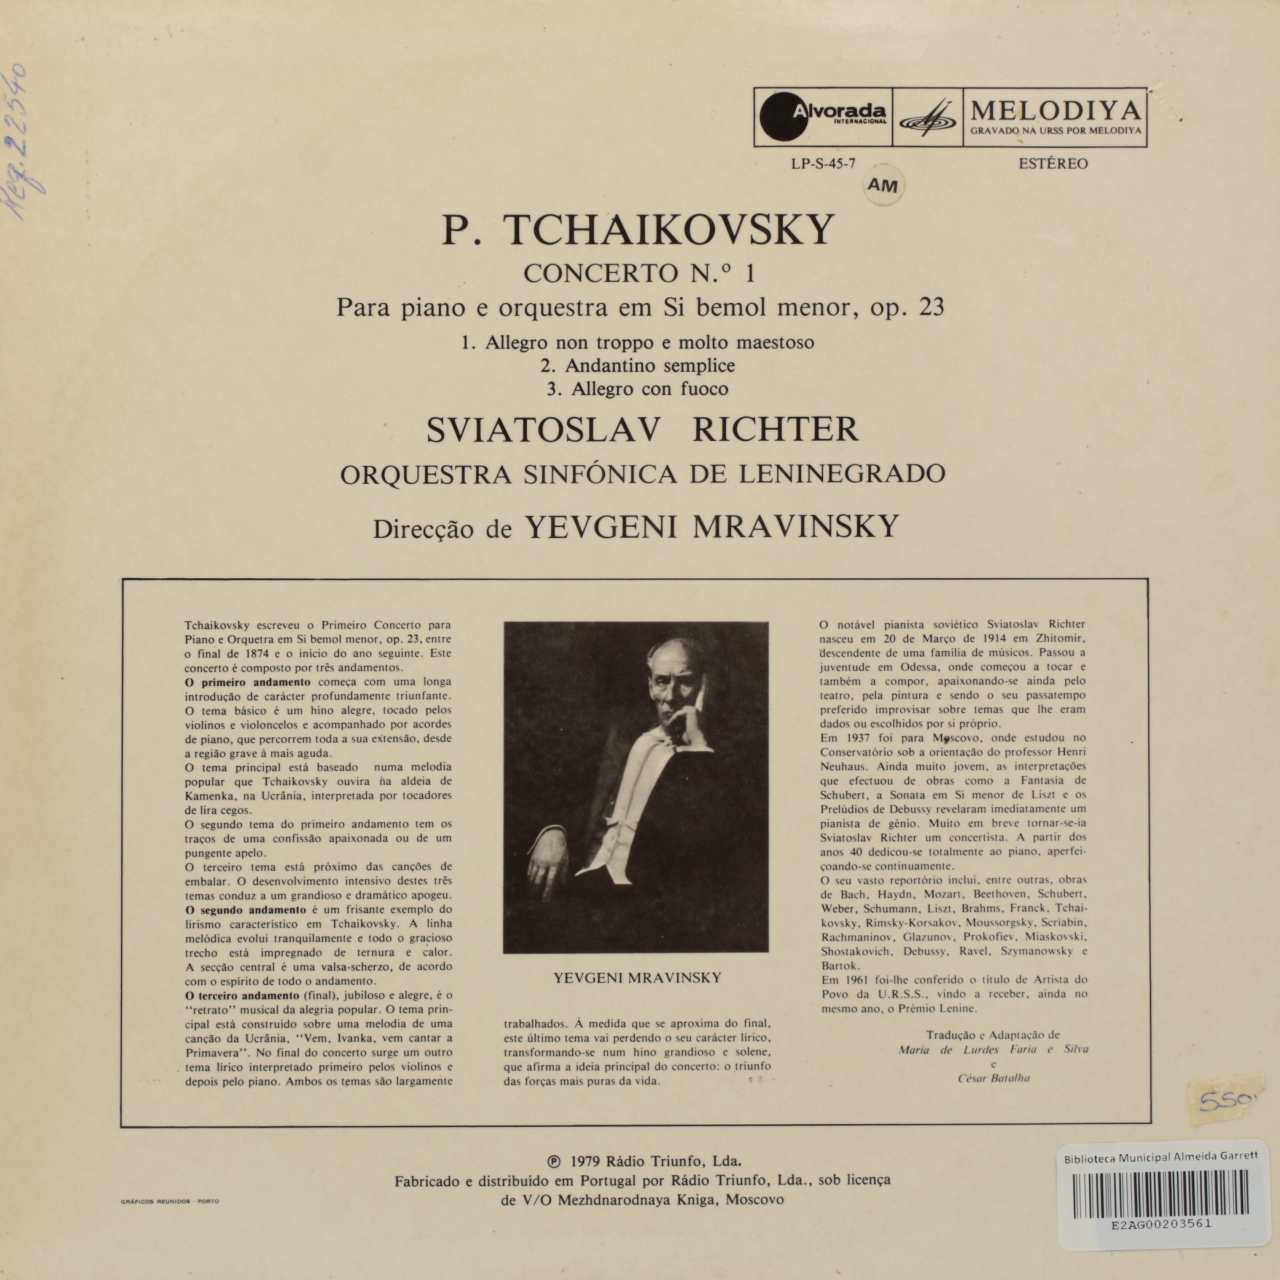 Tchaikovsky: Concerto Nº 1 para piano e orquestra em Si bemol menor, op. 23